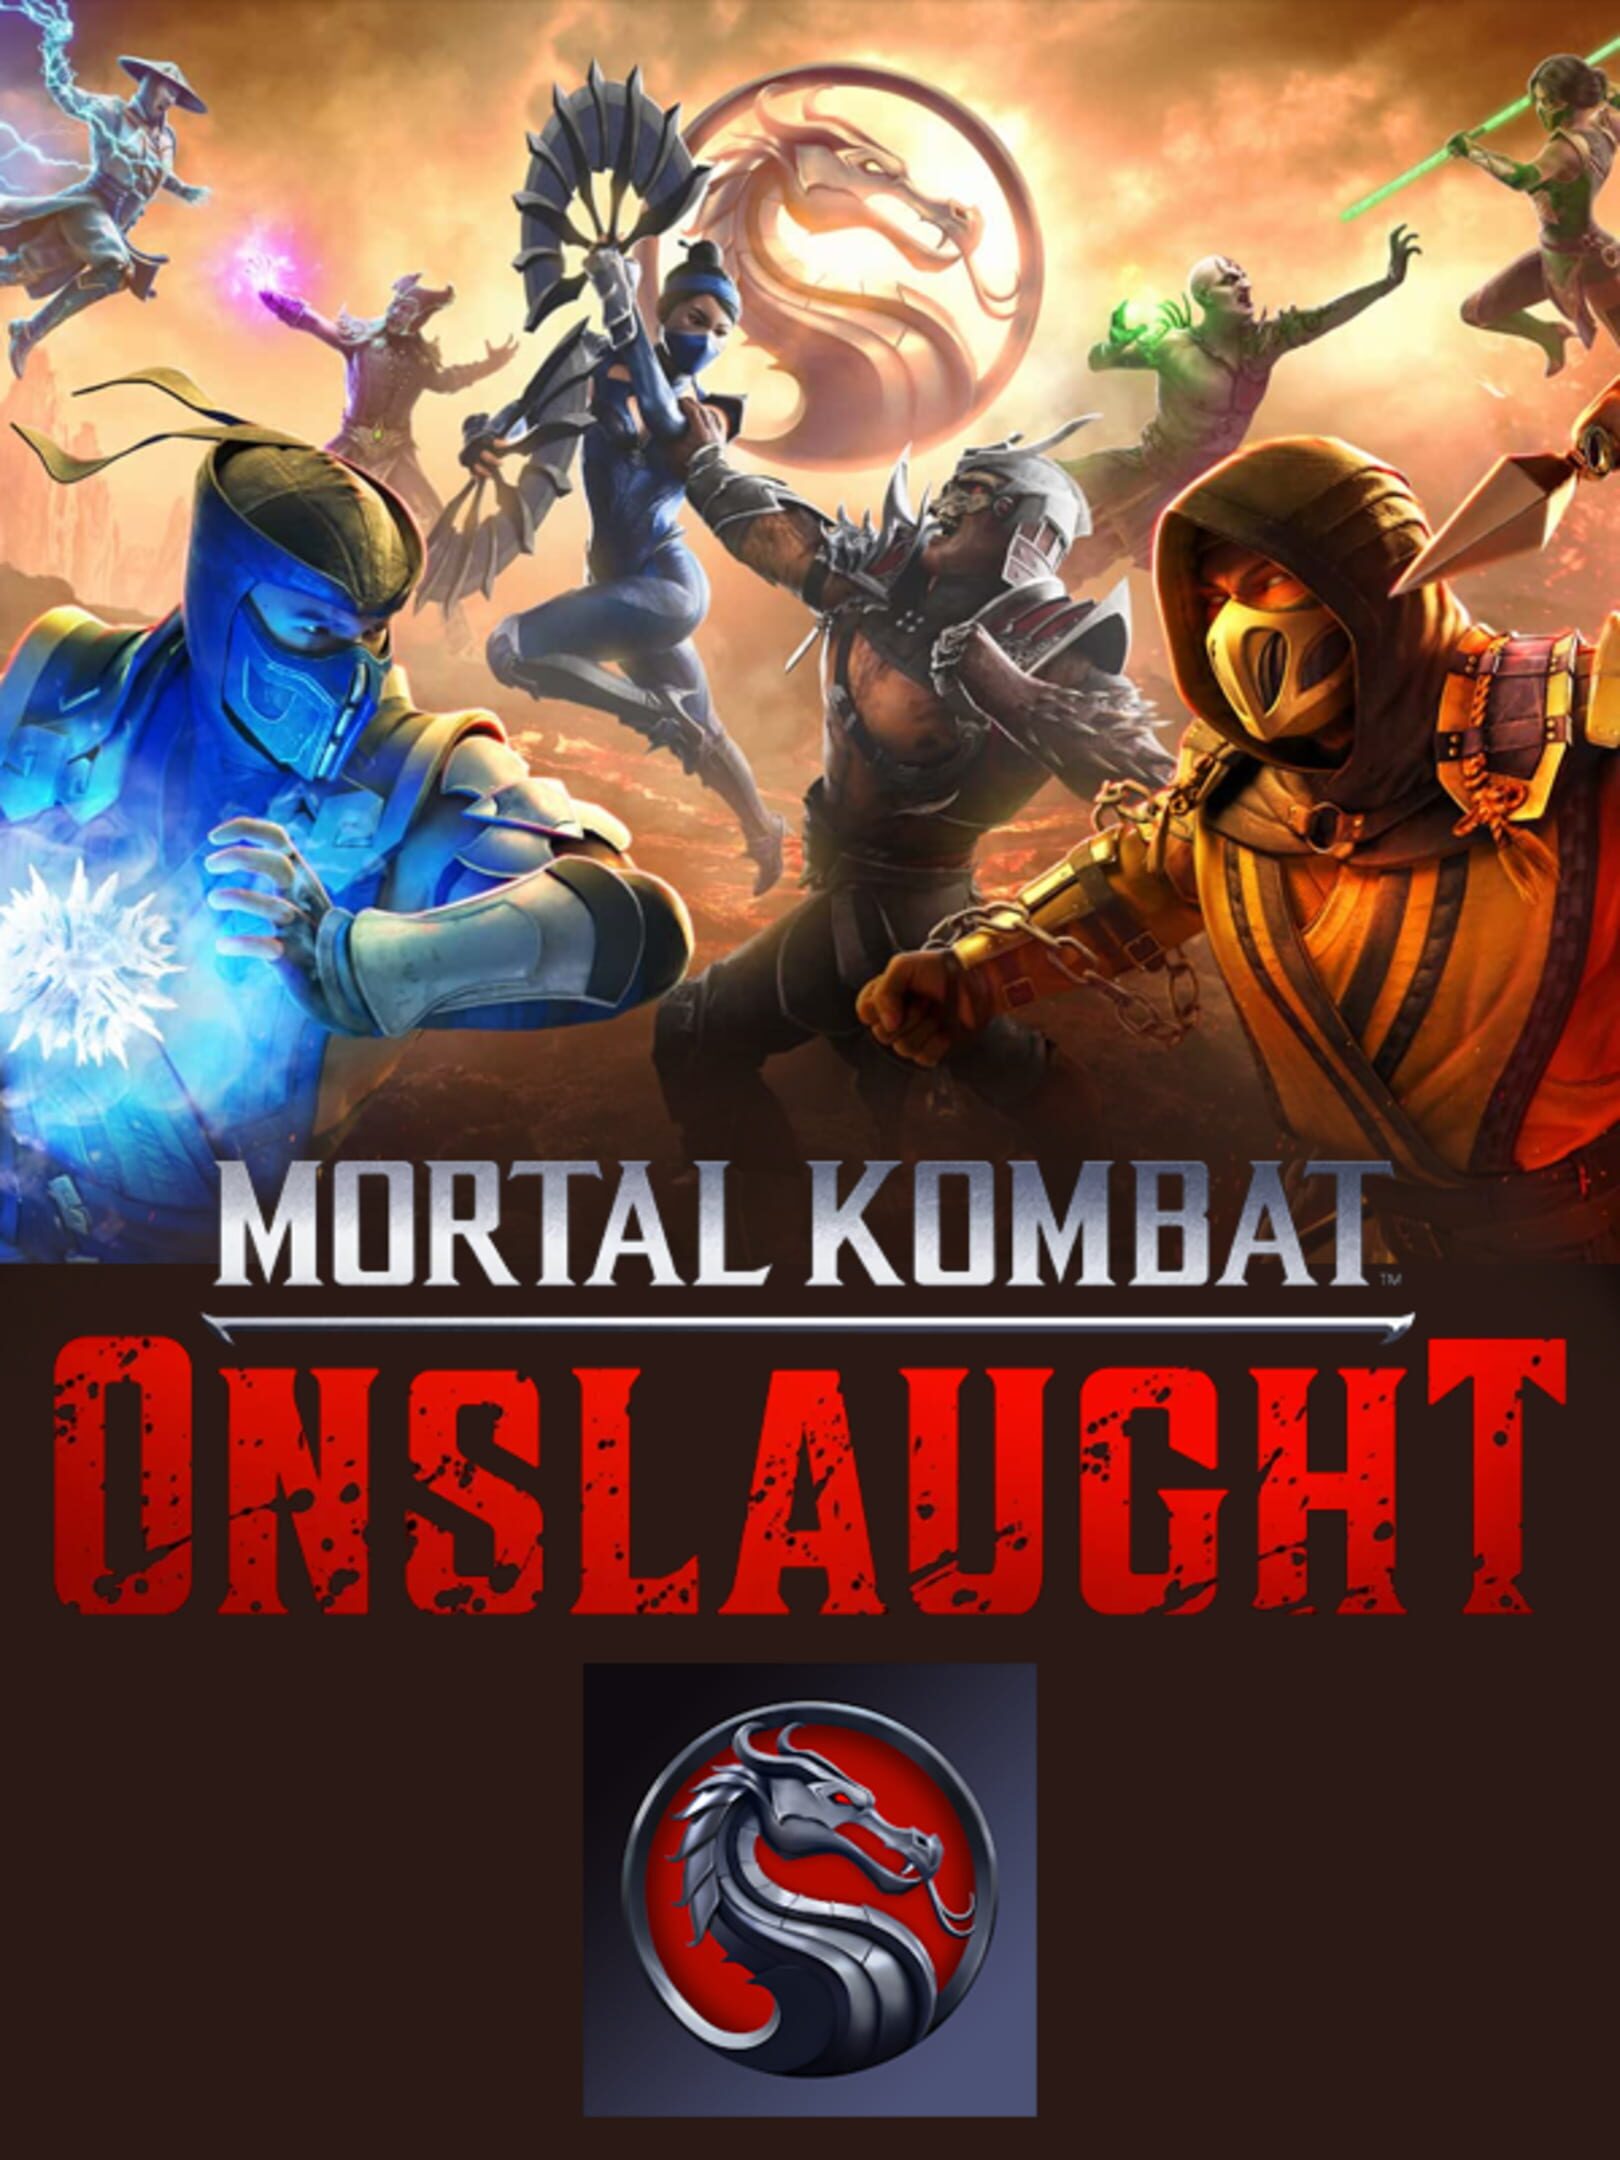 Mortal Kombat: Onslaught para CELULAR, PRIMEIRO gameplay 